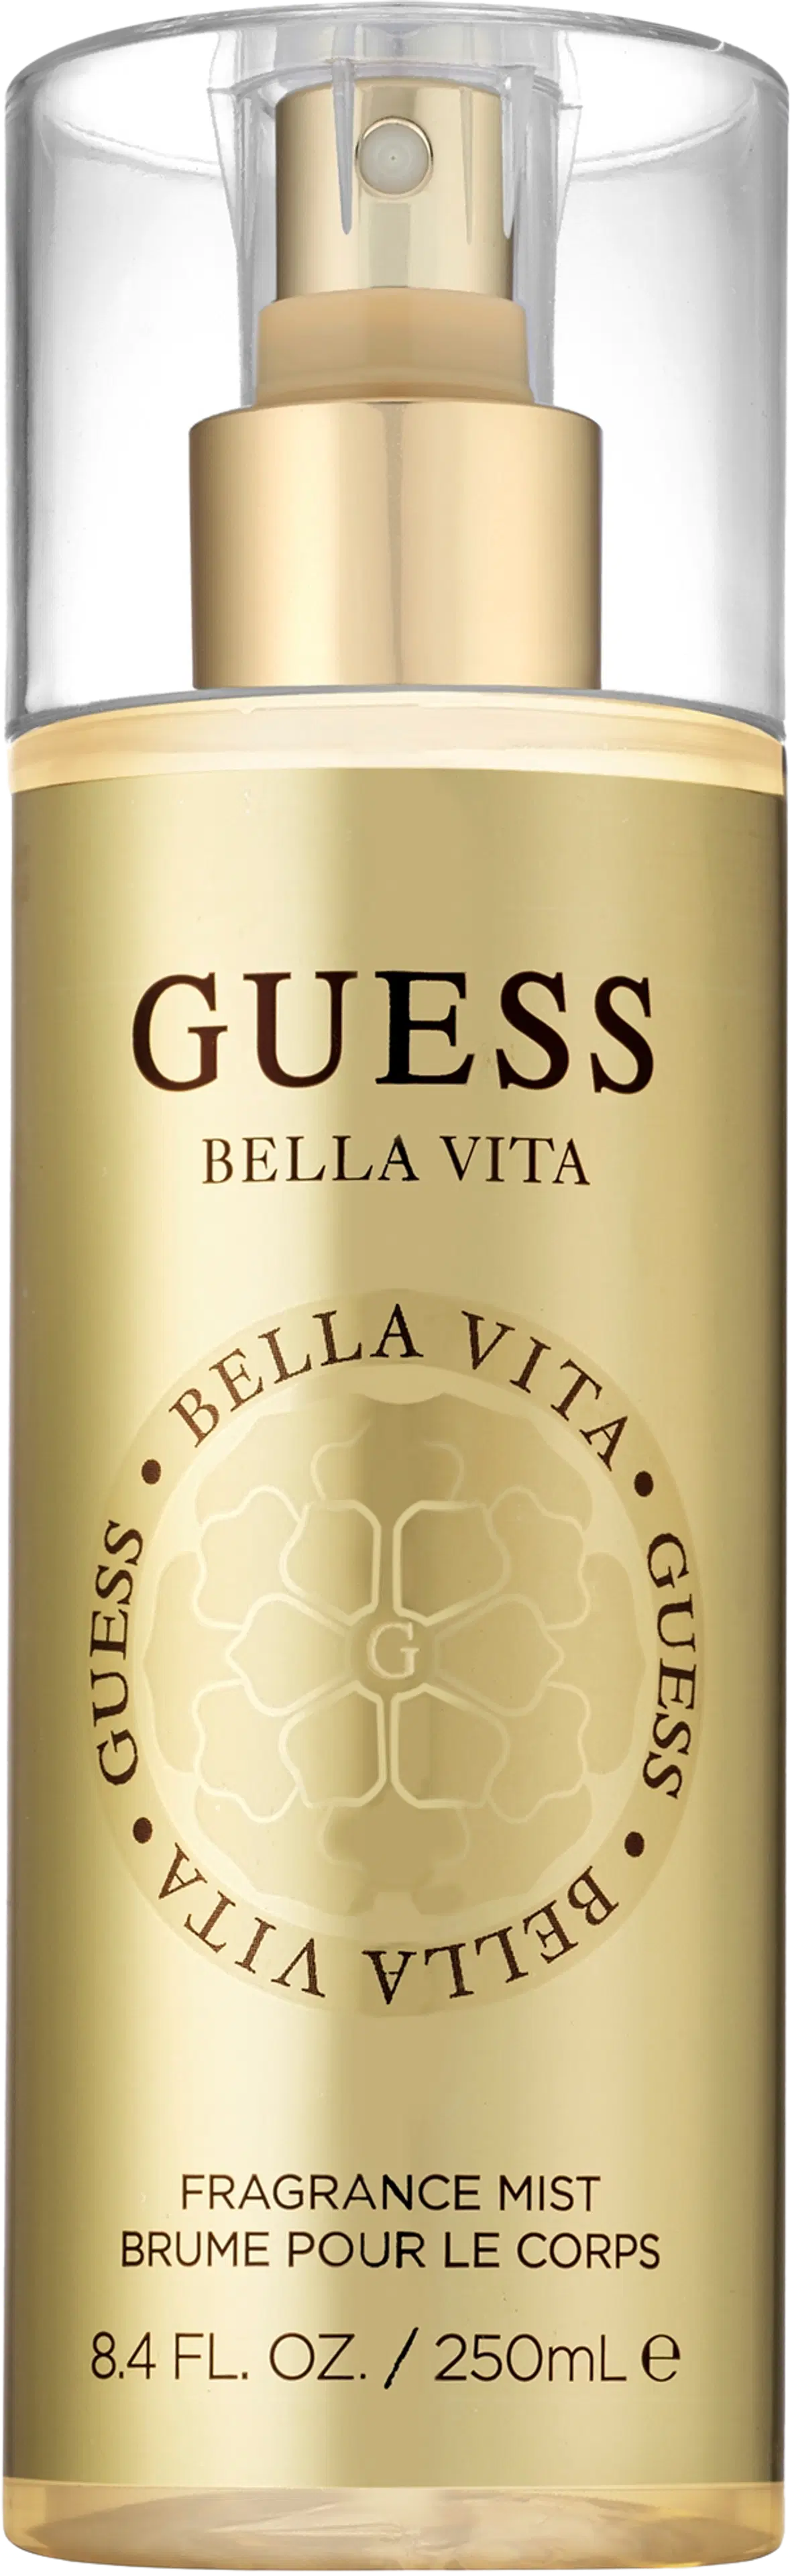 Guess Bella Vita Fragrance Mist 250ml